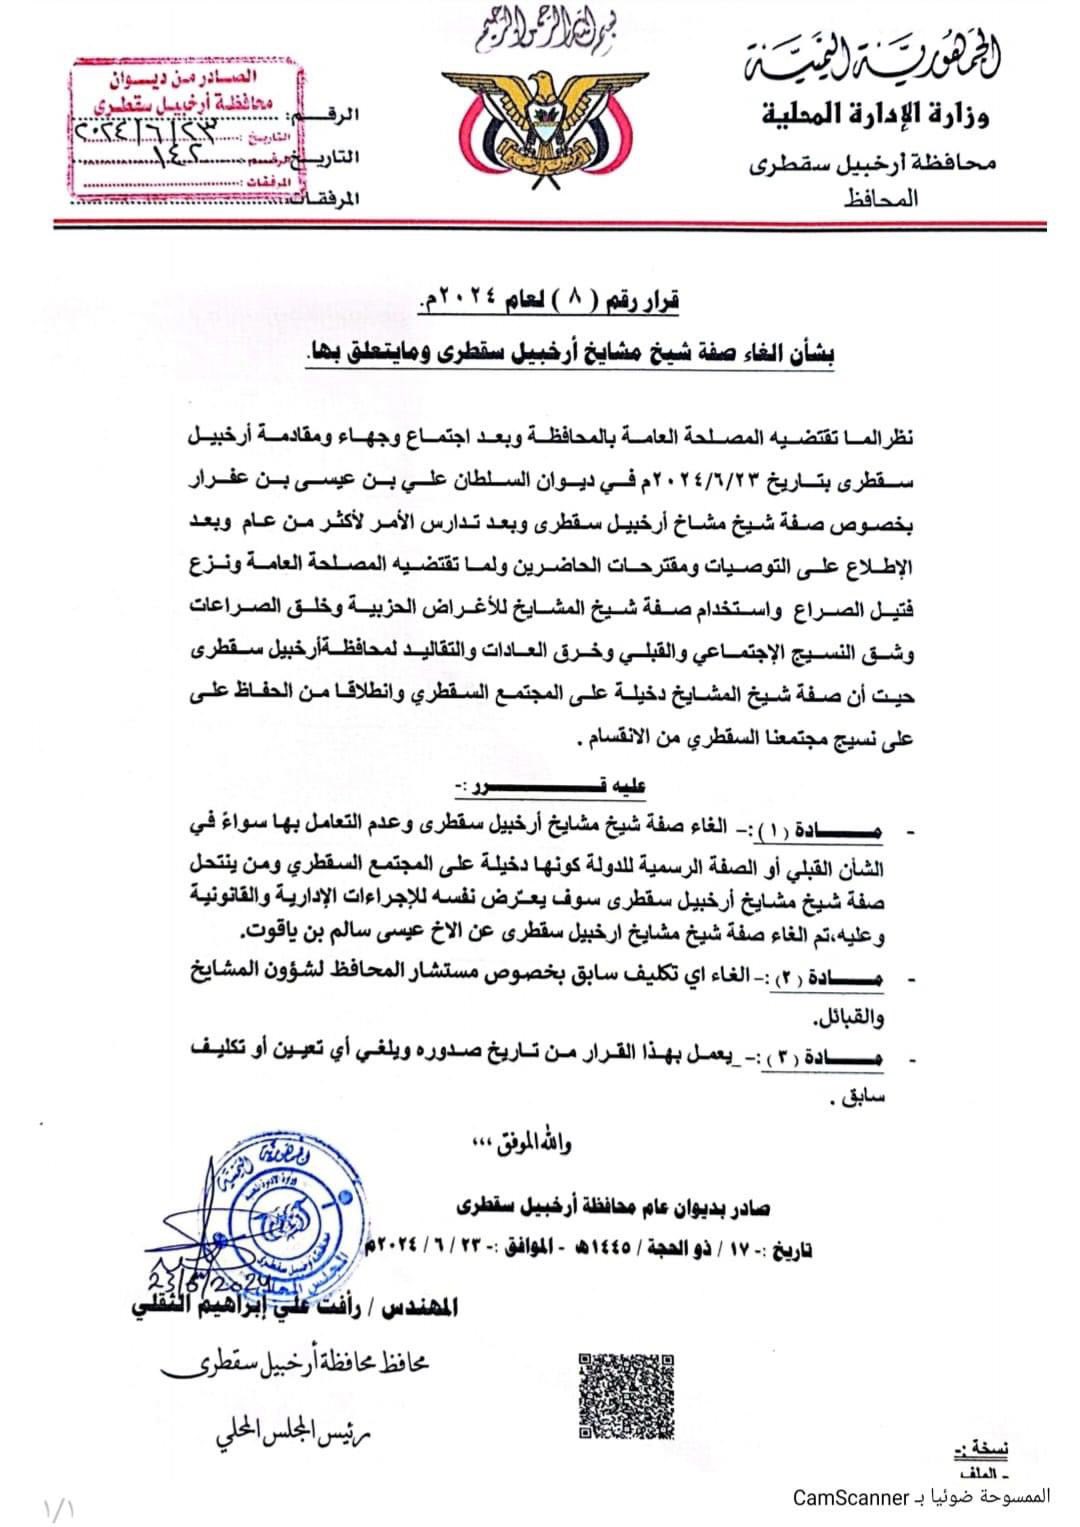 الإمارات عبر موالين لها تتخذ خطوة مثيرة للجدل في سقطرى بإلغاء لقب شيخ مشائخ